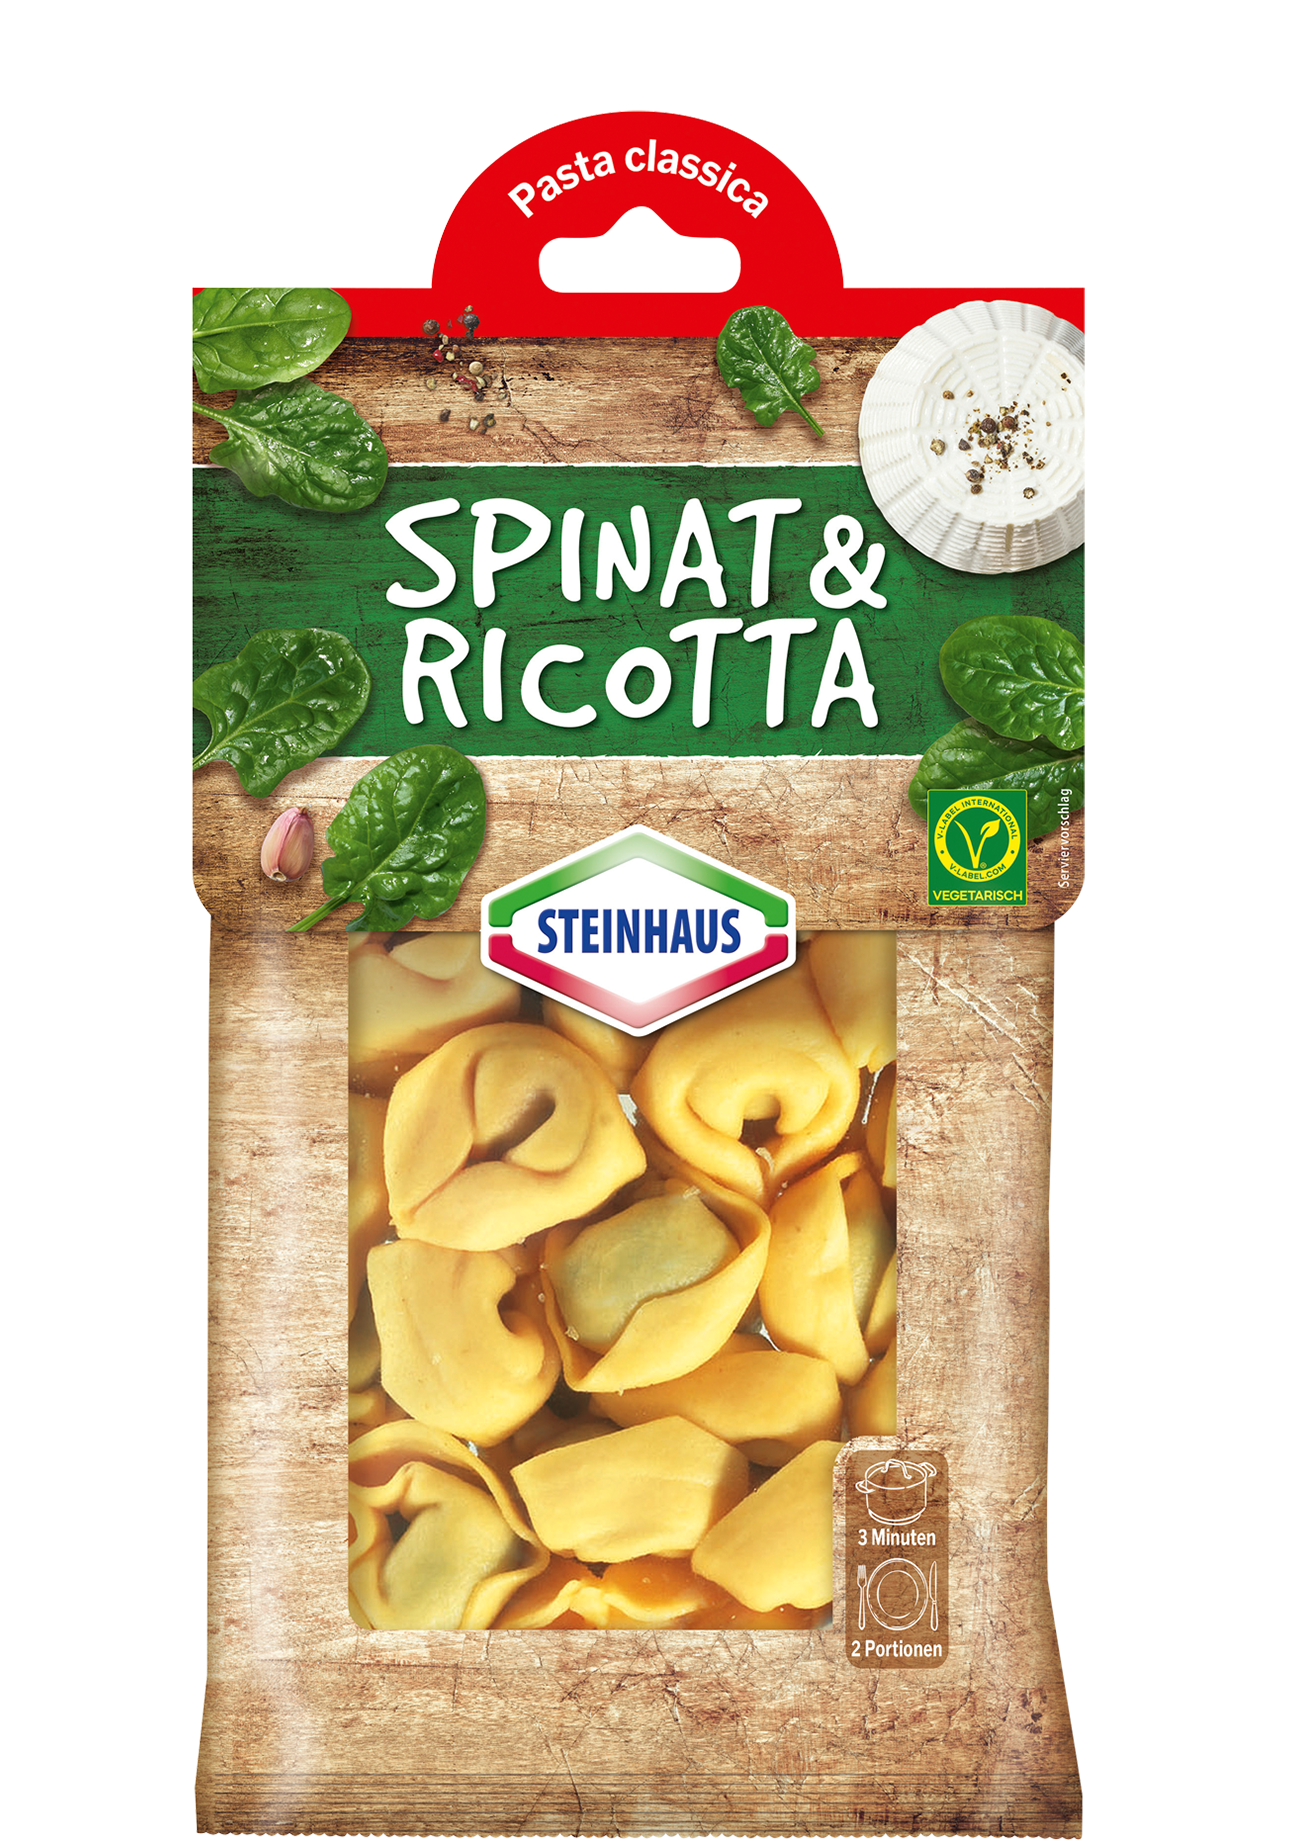 Spinach ricotta tortelloni – Frische Tortelloni, gefüllt mit cremigem Ricotta, Blattspinat und mit Pecorino-Käse verfeinert – das ist Pastagenuss für jeden Tag.